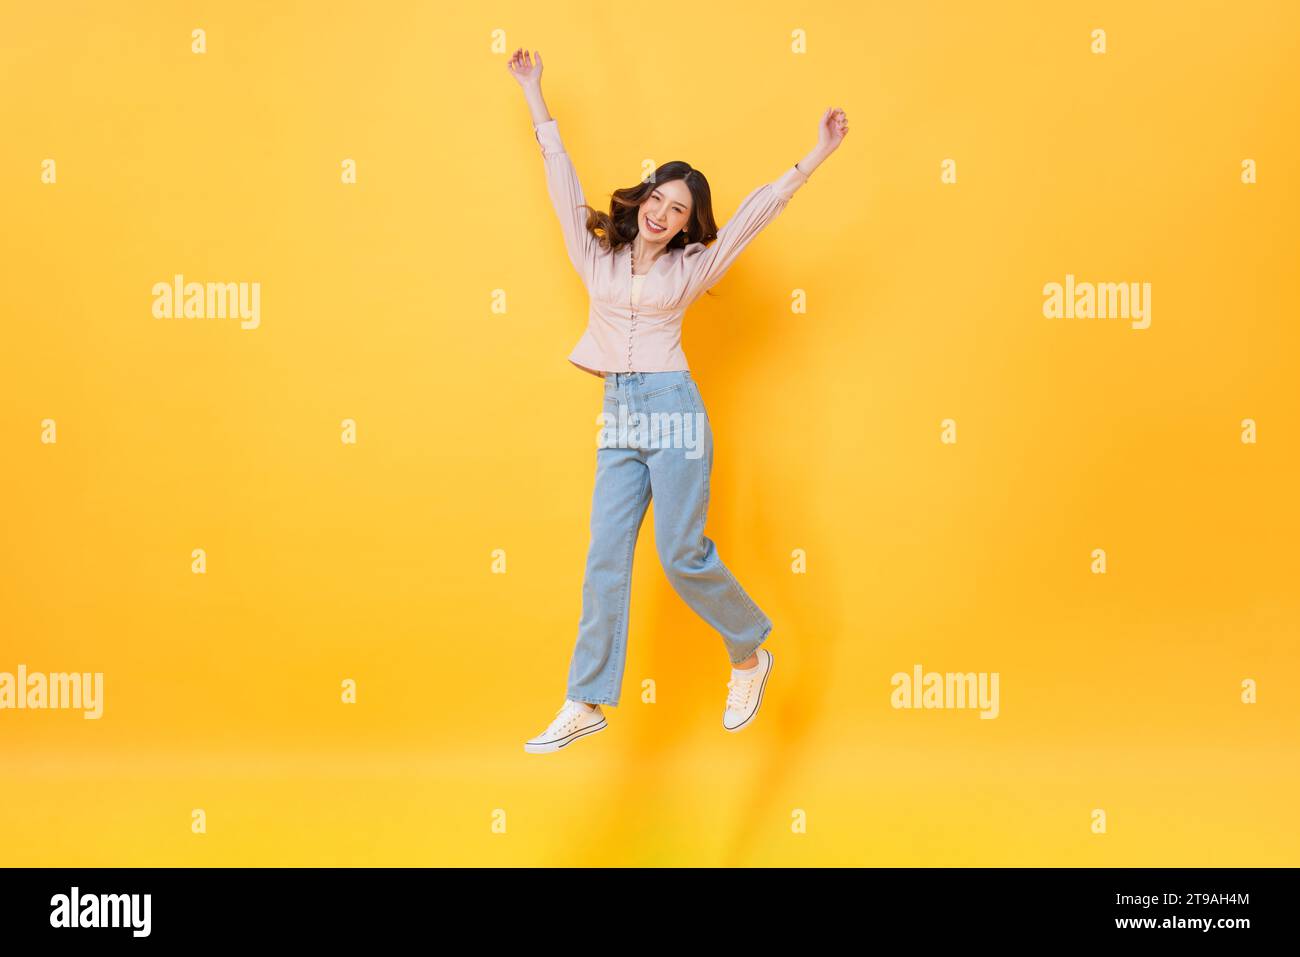 Fröhliche asiatische Frau in lässiger Kleidung lächelnd und springend mit Händen nach oben in bunter gelber Farbe isolierte Hintergrundaufnahmen im Studio Stockfoto